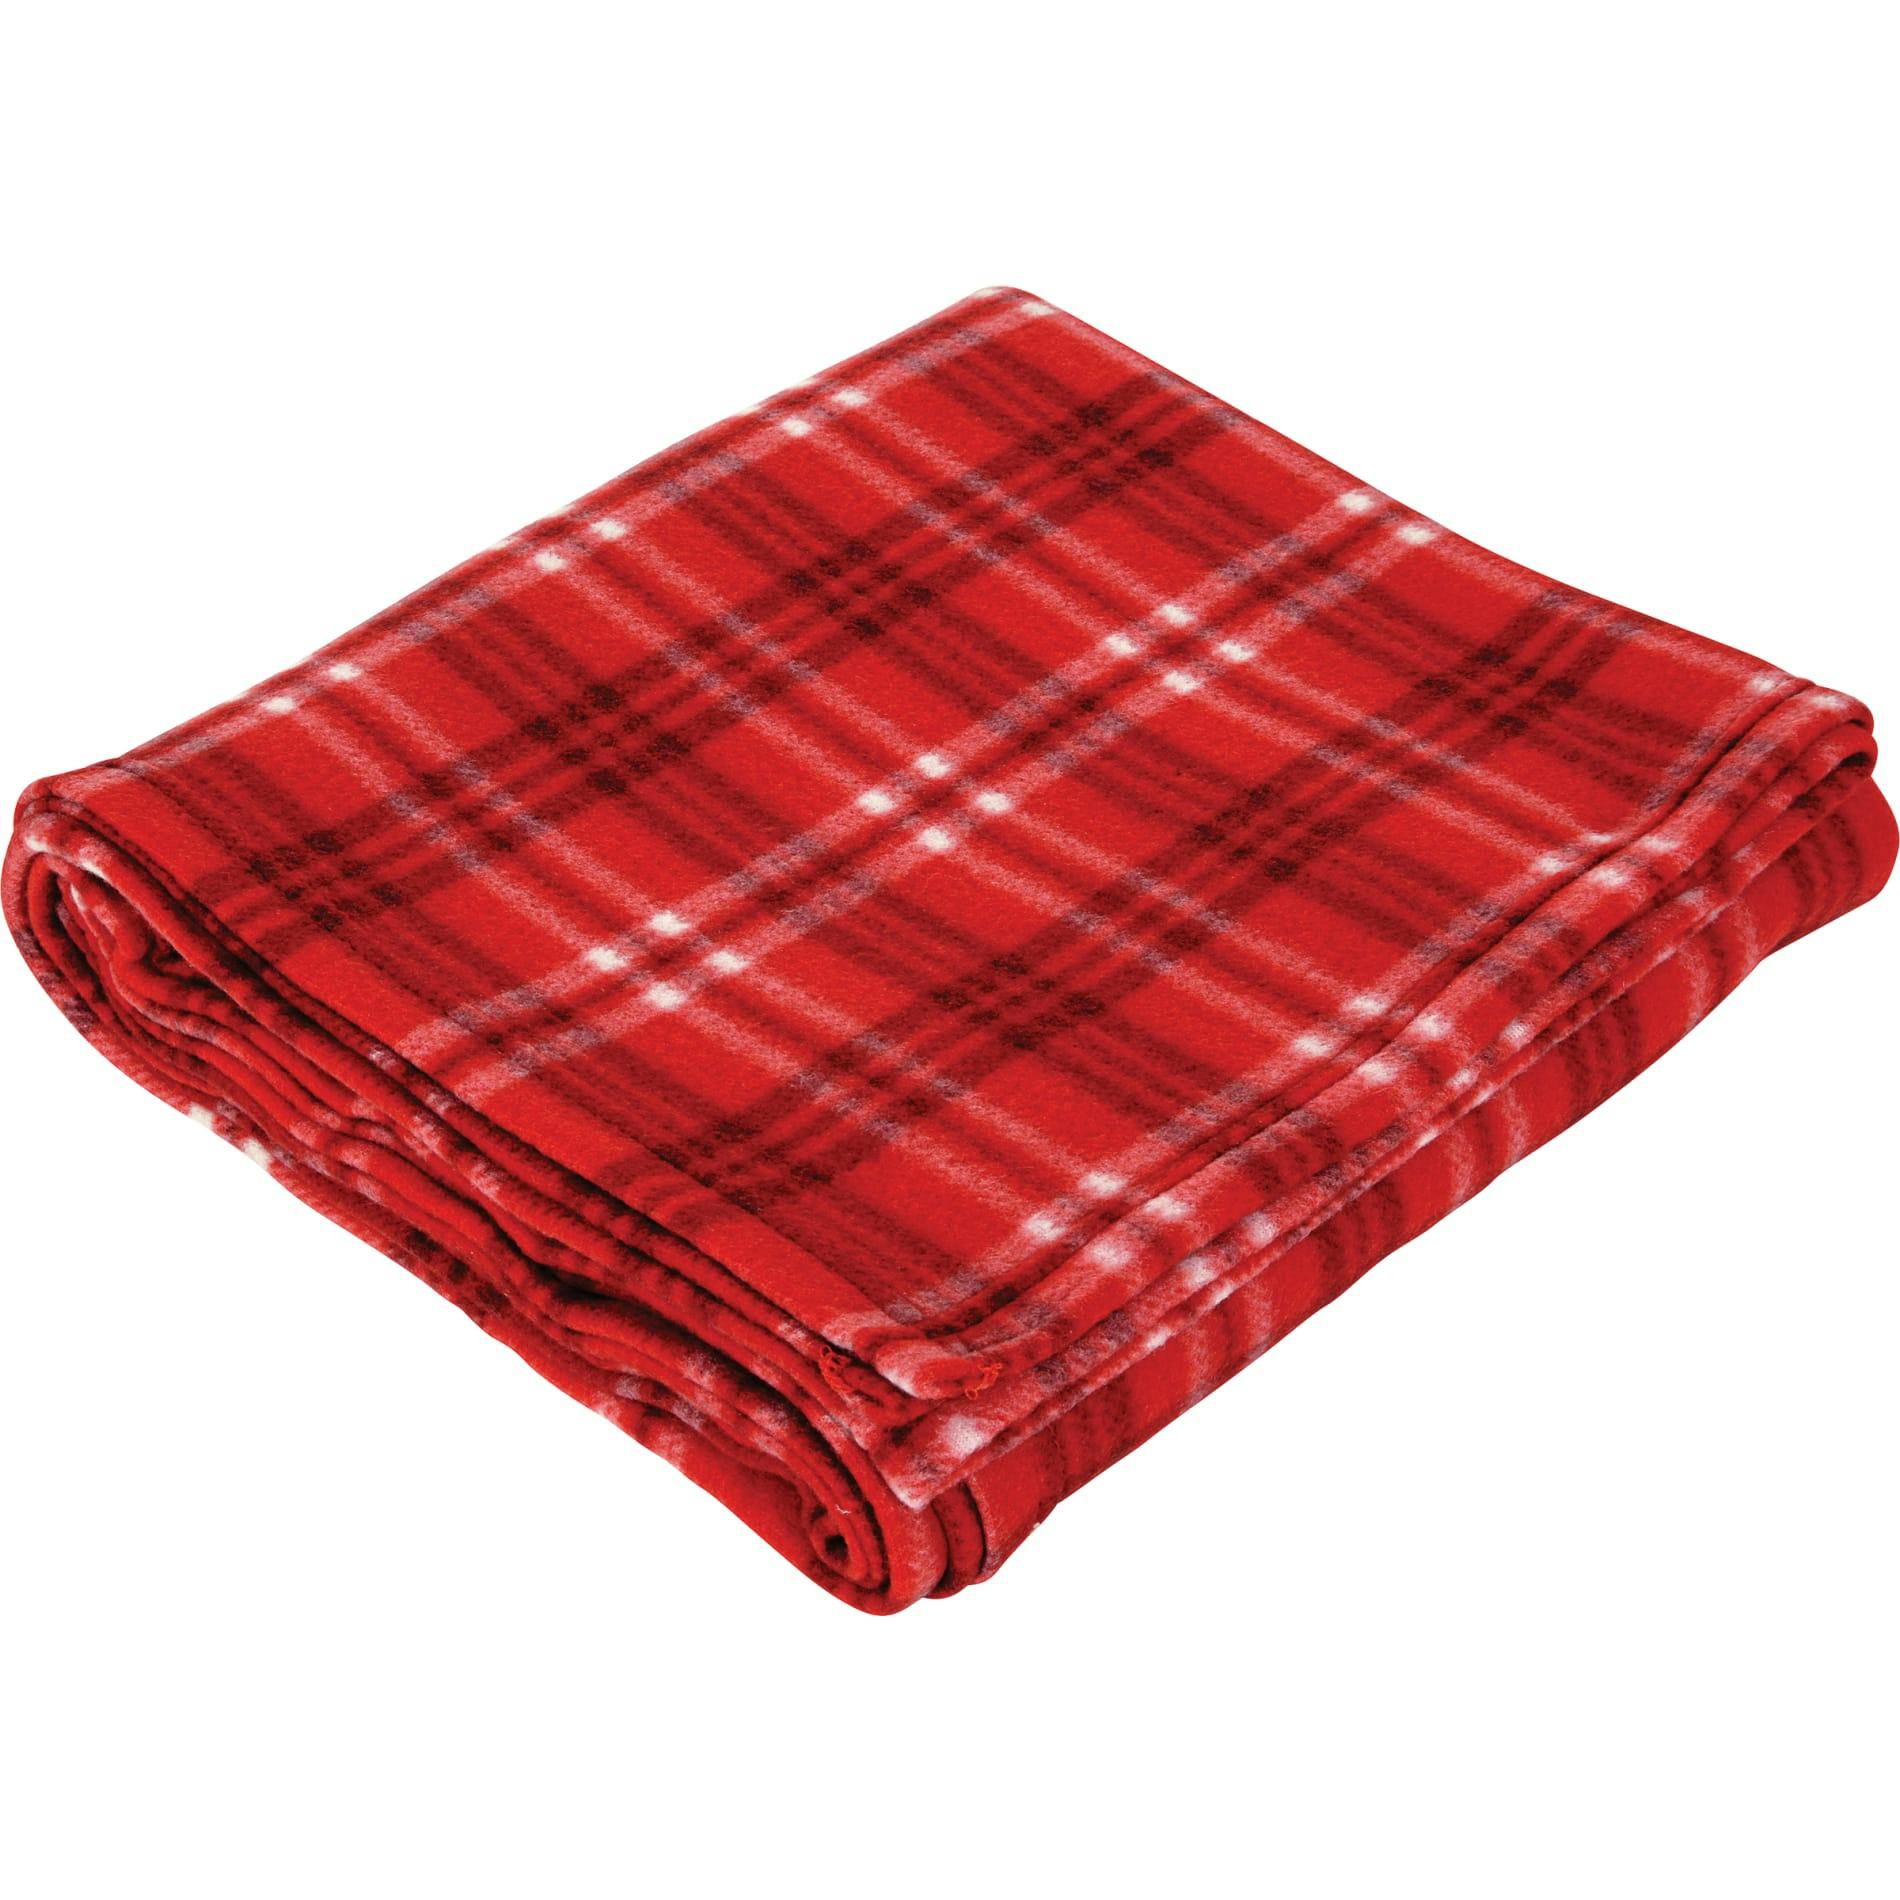 Plaid Fleece Blanket - additional Image 5